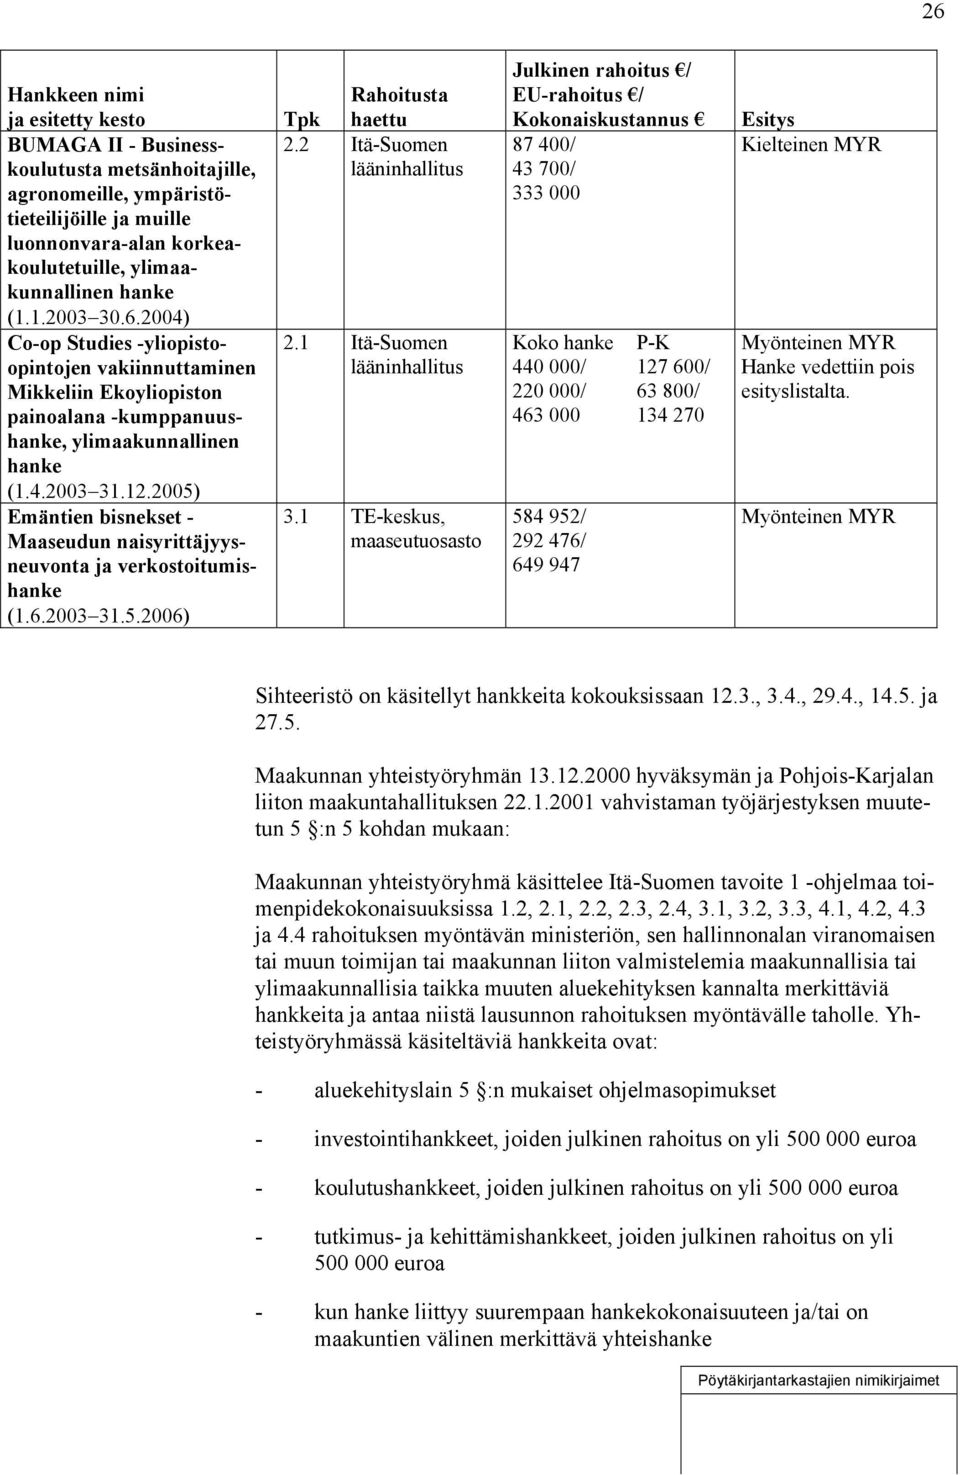 2004) Co-op Studies -yliopistoopintojen vakiinnuttaminen Mikkeliin Ekoyliopiston painoalana -kumppanuushanke, ylimaakunnallinen hanke (1.4.2003 31.12.